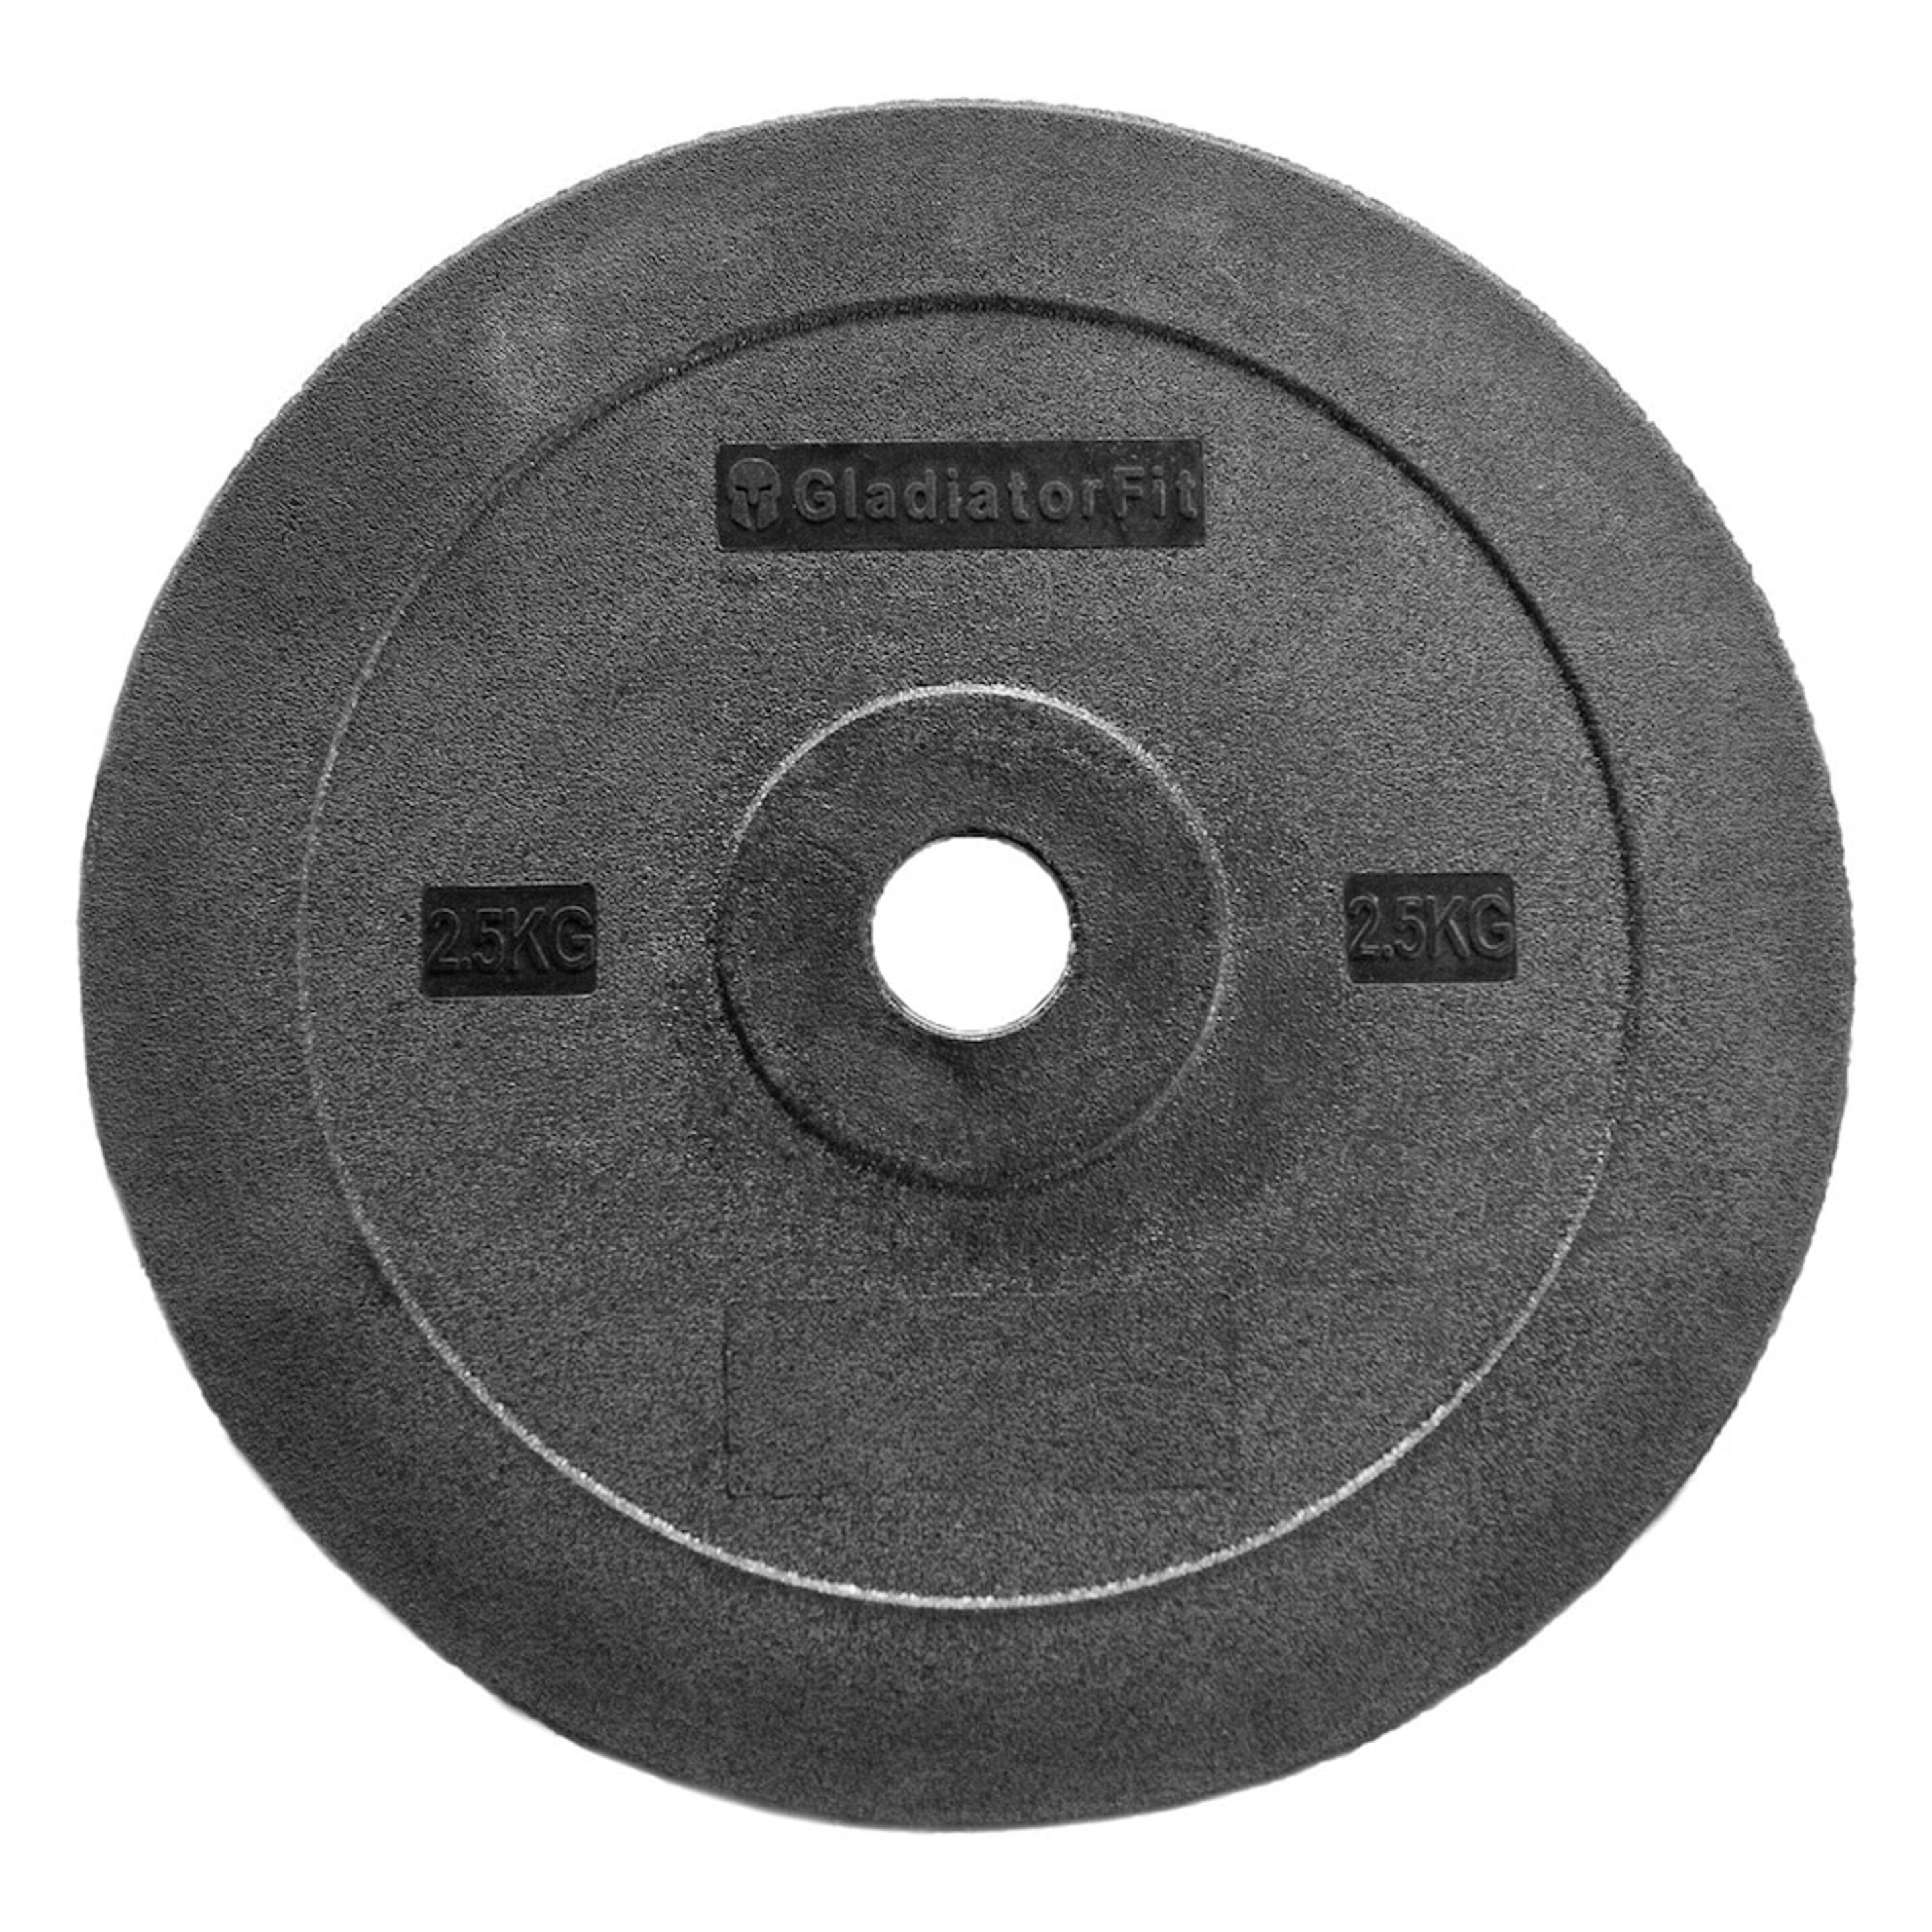 Disco De Plástico Técnico 2,5kg Ø 51mm - negro - 